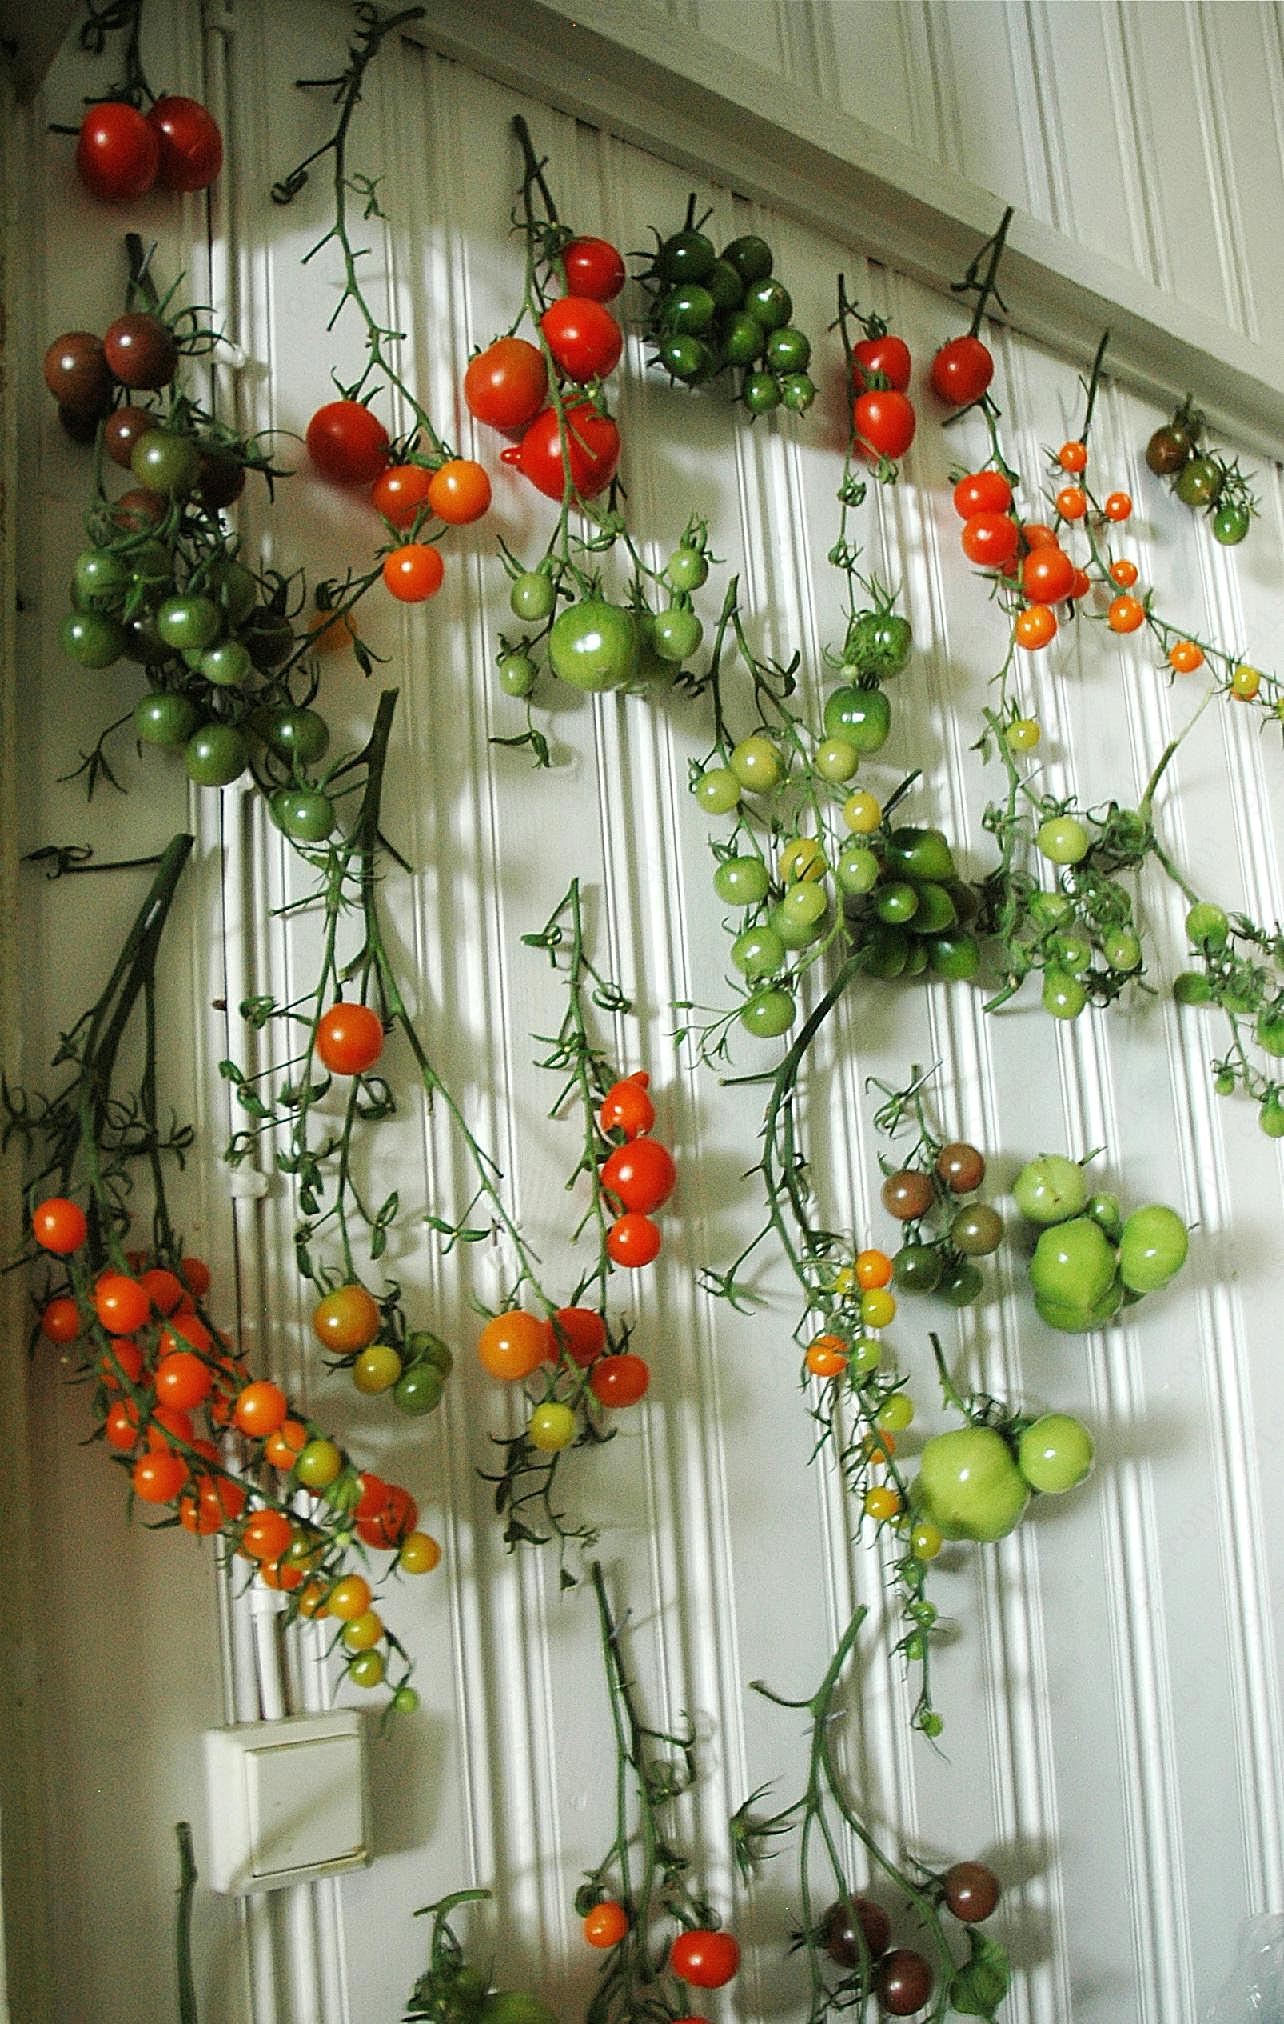 挂满墙壁的小番茄图片蔬菜